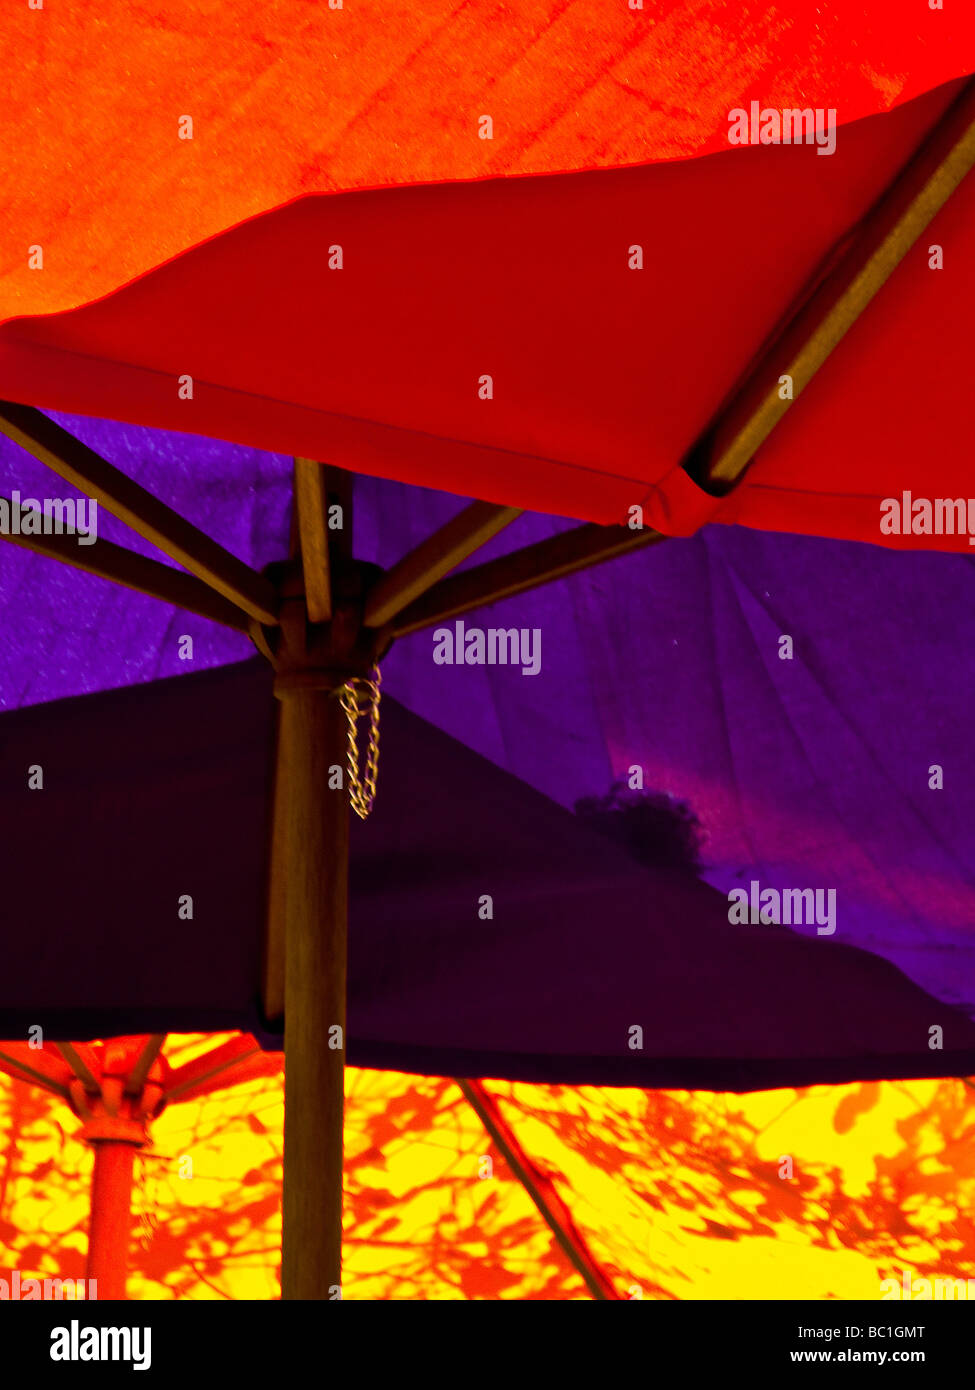 Abstract, ombrelloni colorati Foto Stock